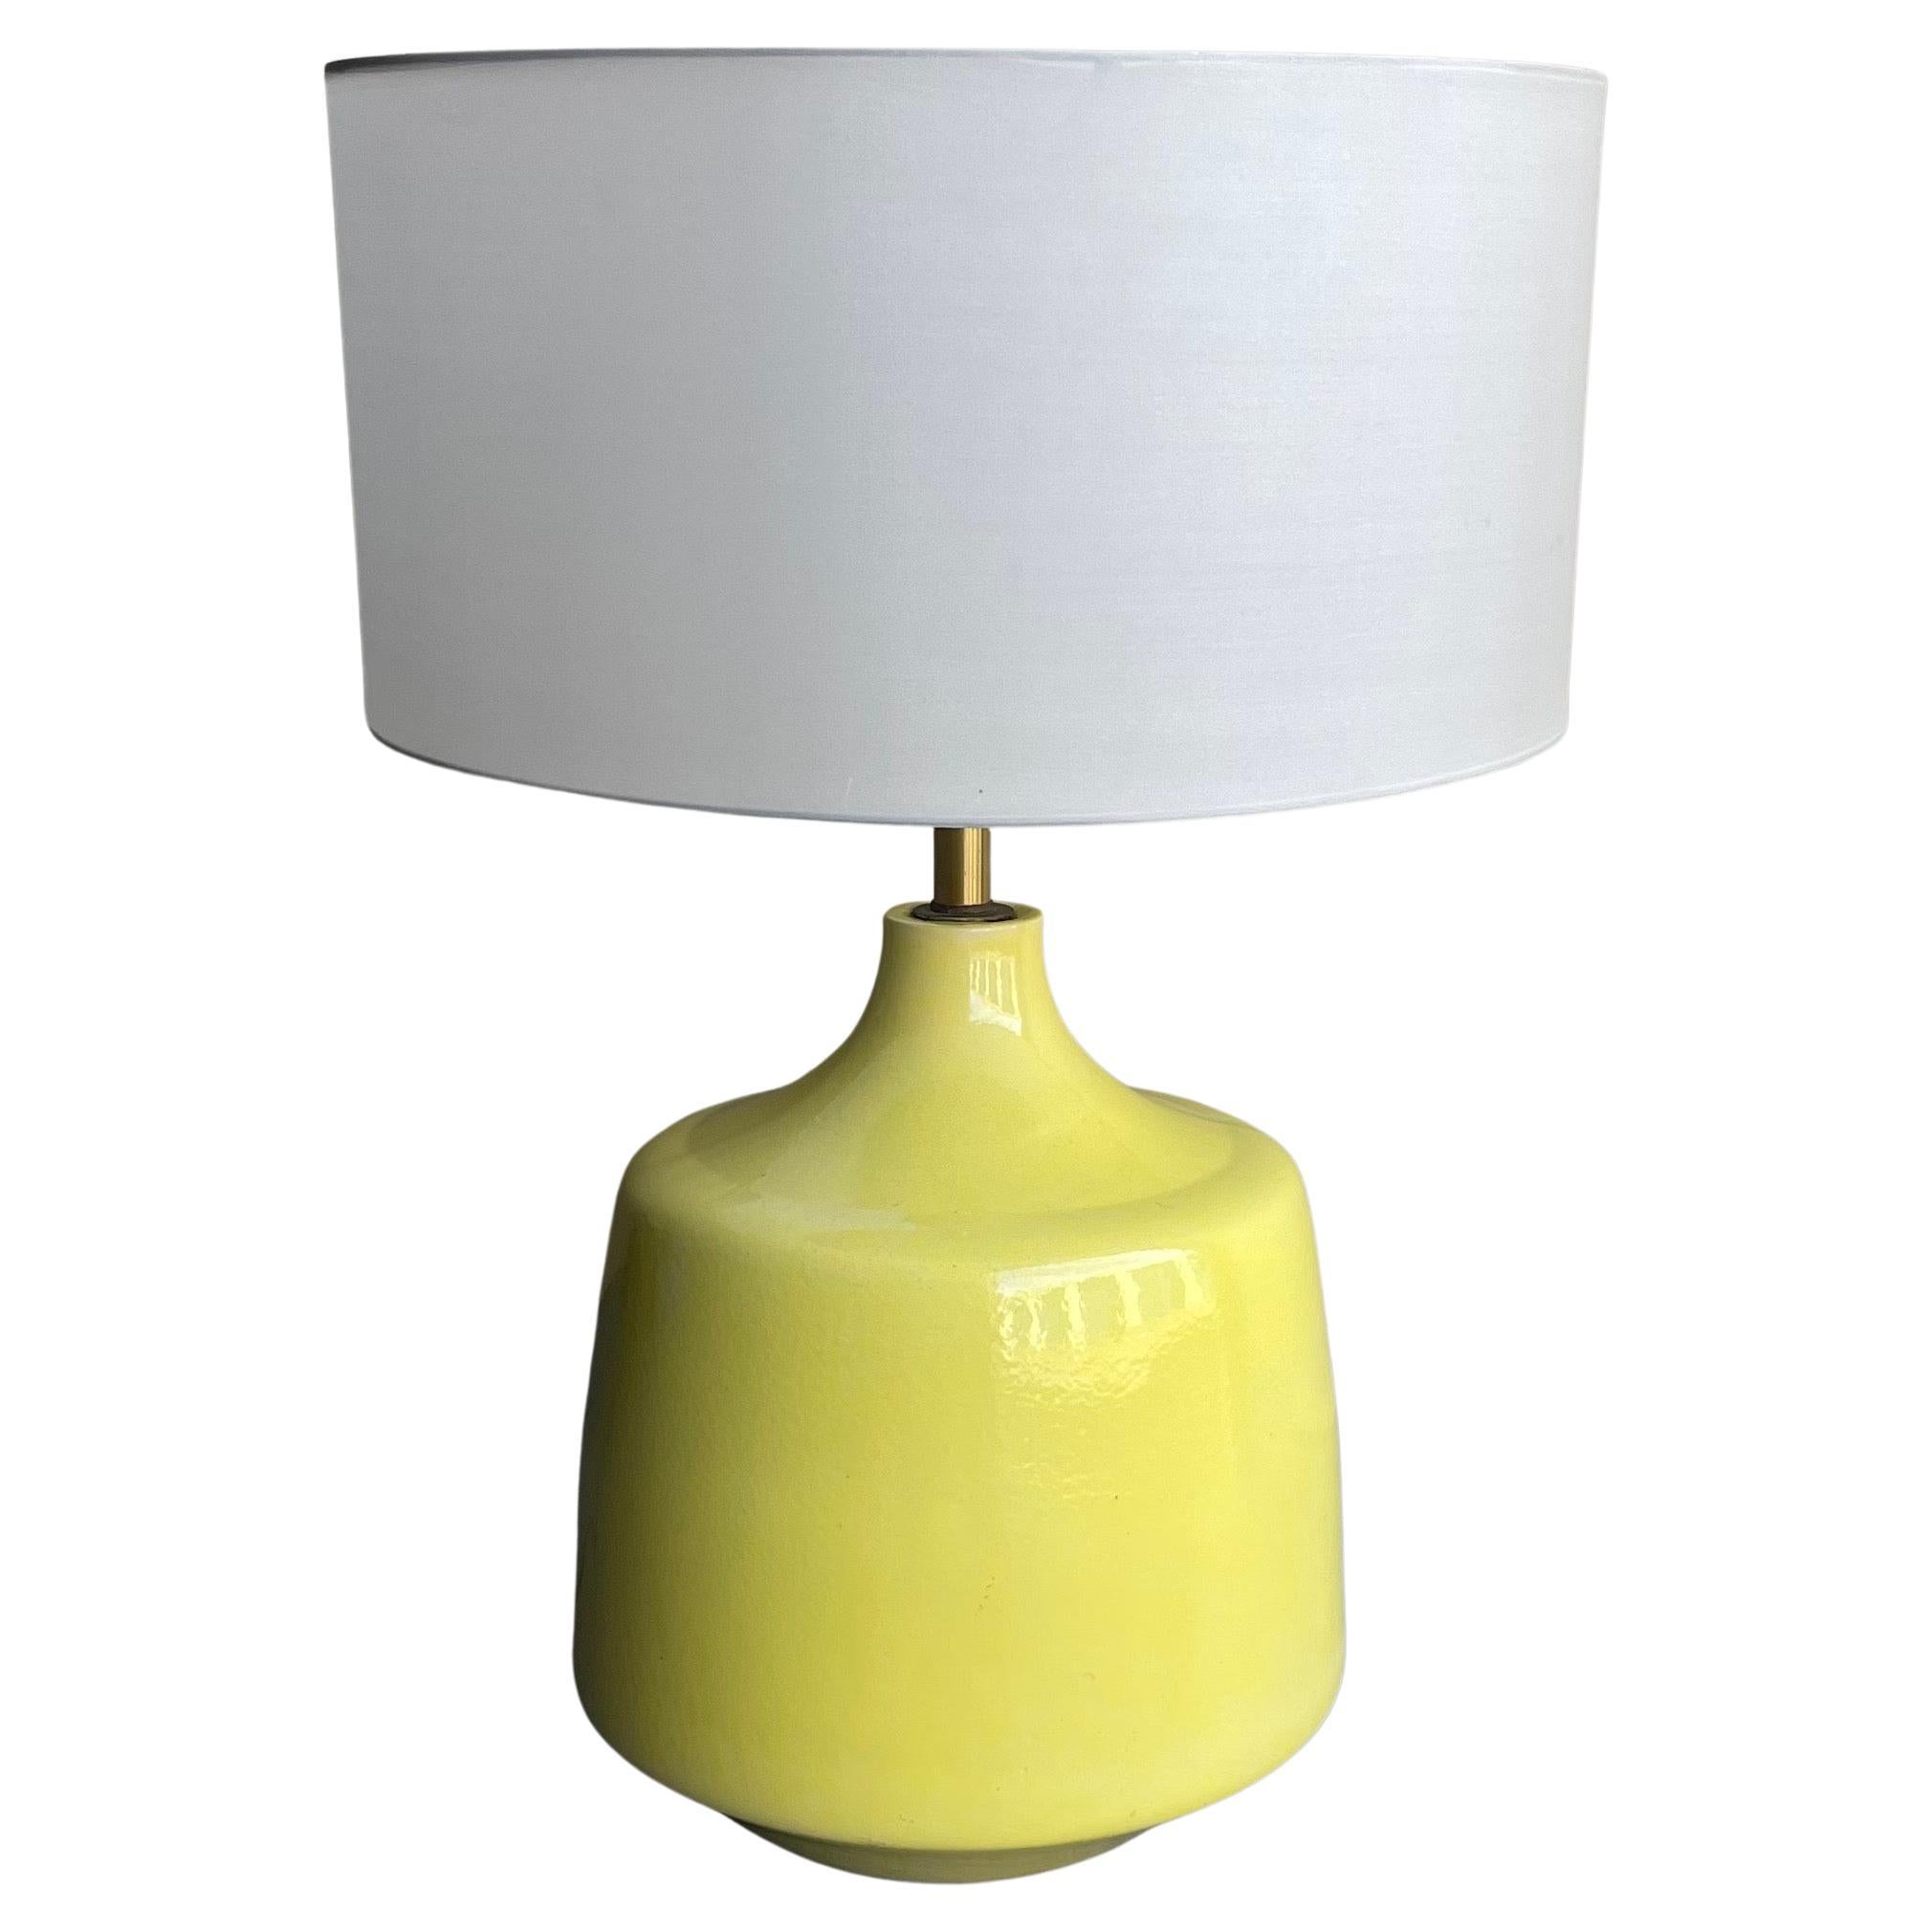 Monumentale lampe de table en céramique émaillée jaune vif de Studio Pottery